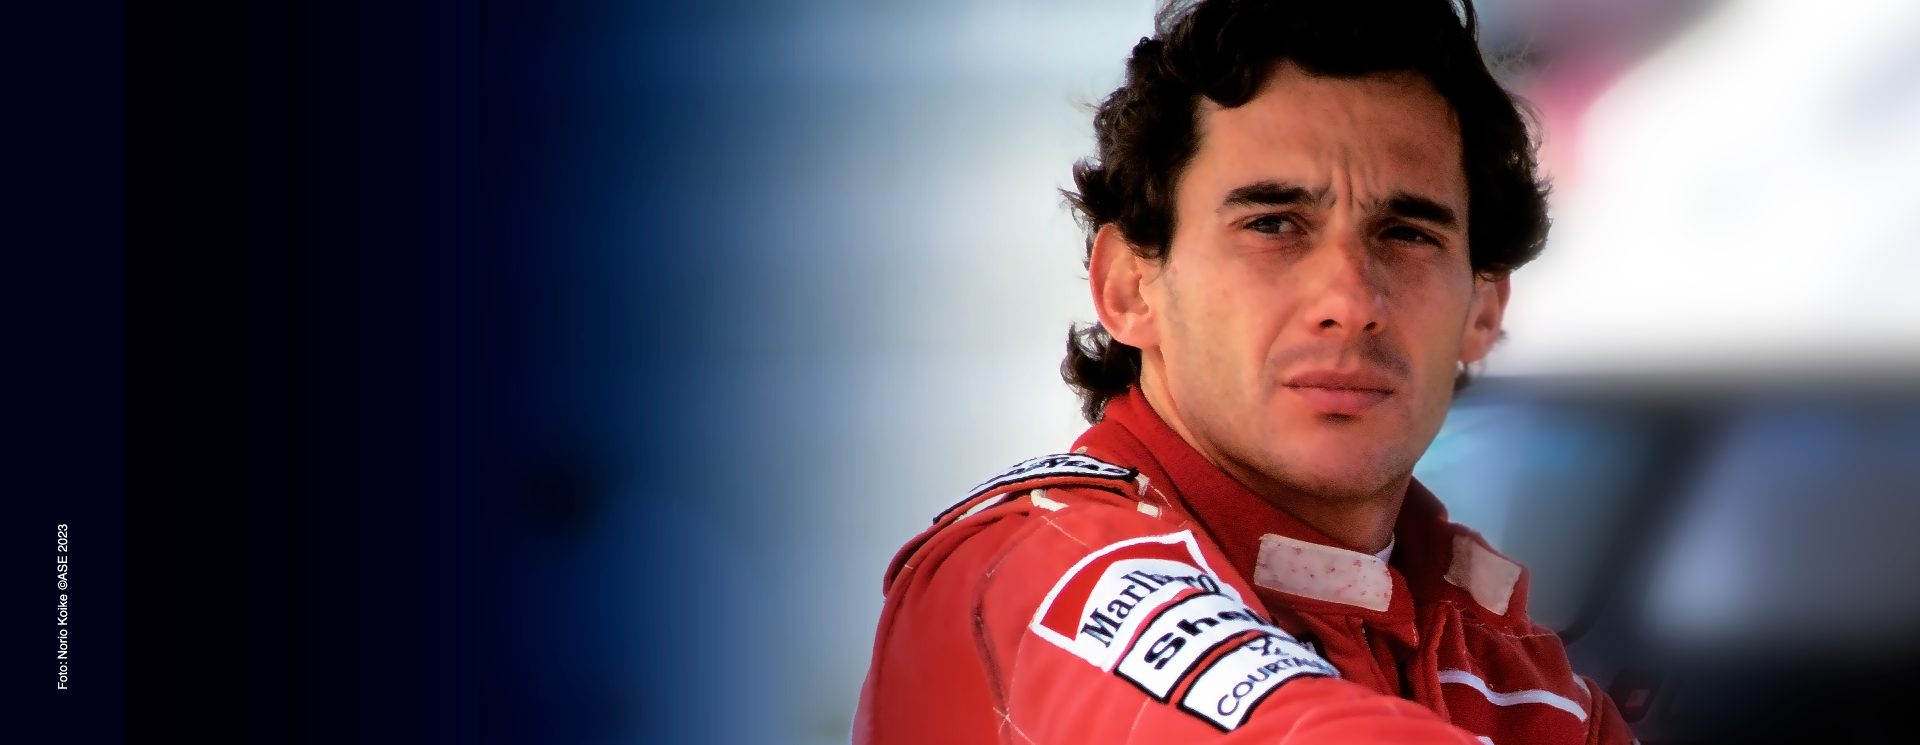 Retrato do piloto de corrida Ayrton Senna em um macacão vermelho, parecendo pensativo com um fundo de pista desfocado.